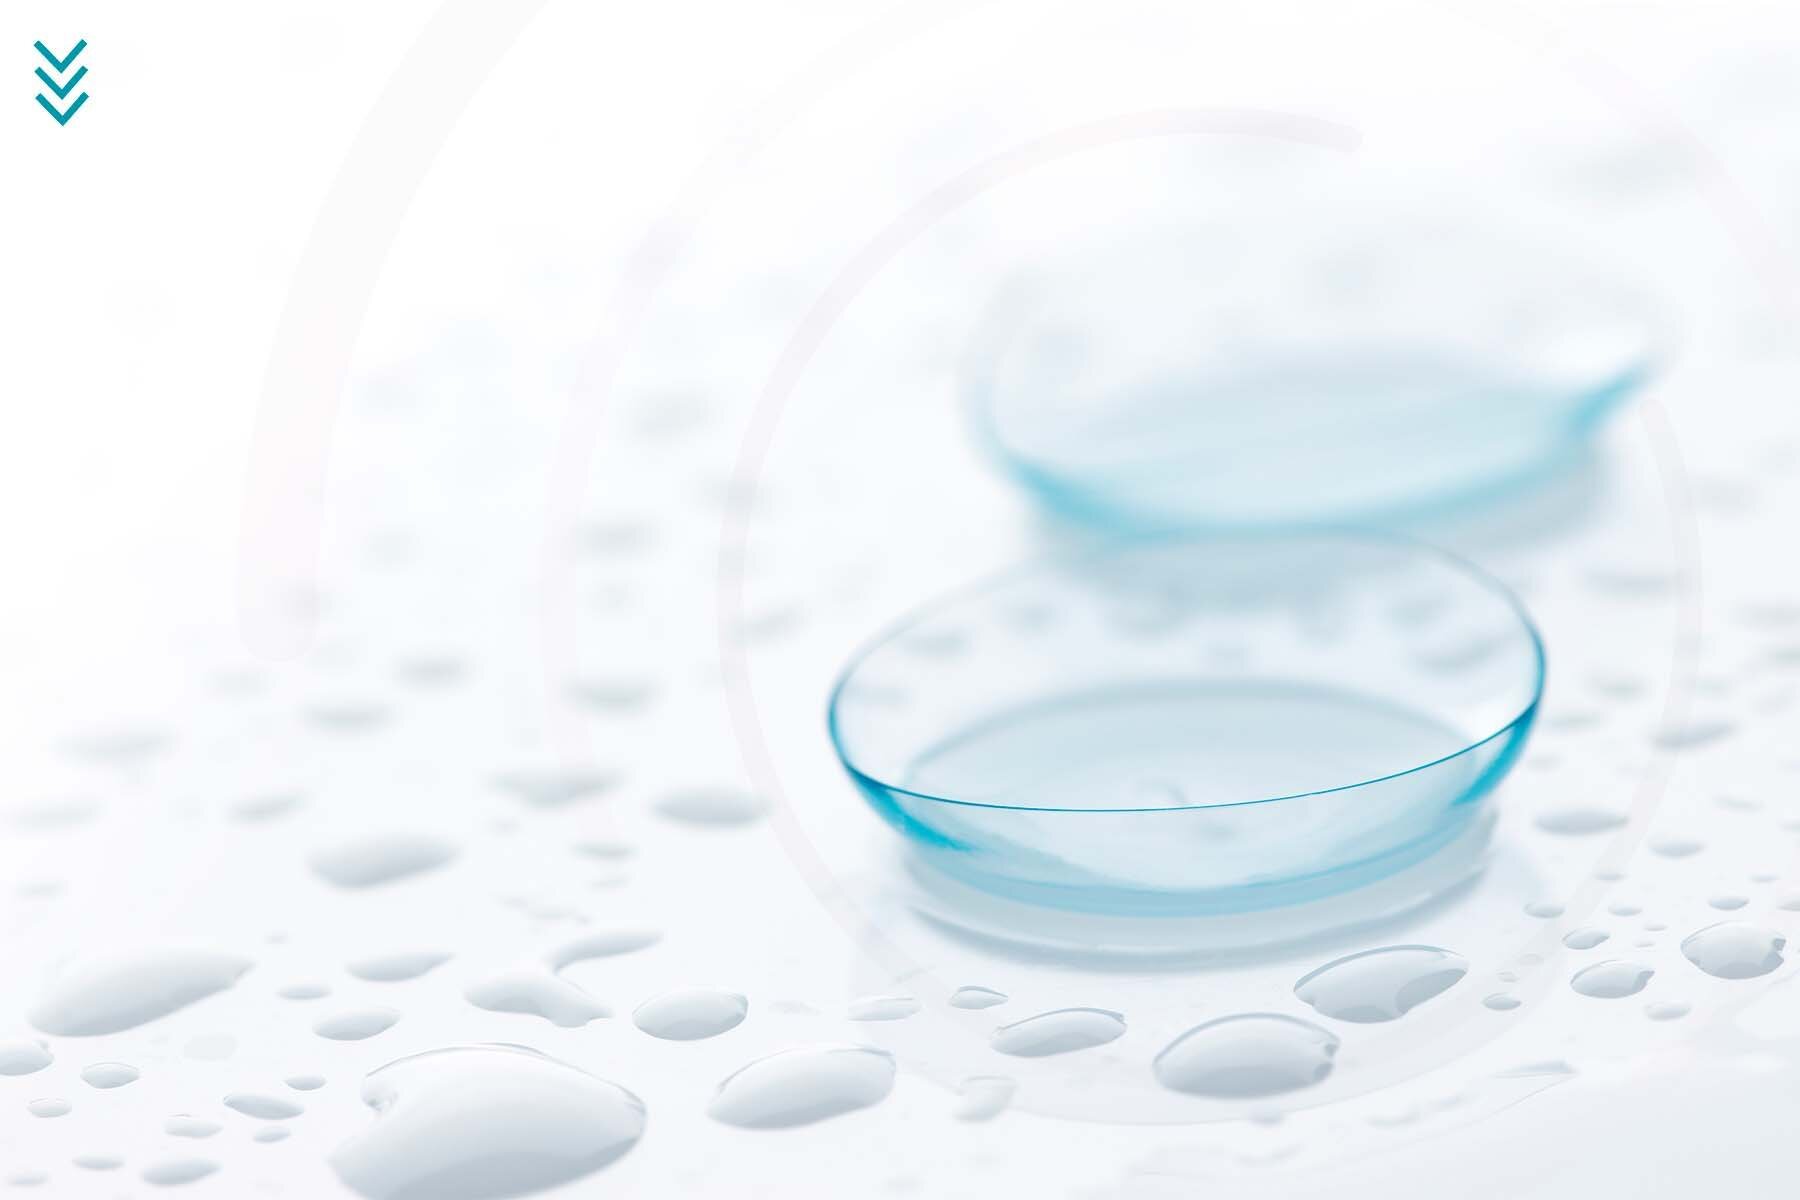 Imagen de lentes de contacto sobre una superficie húmeda. La idea es representar las características de humectación y comodidad.